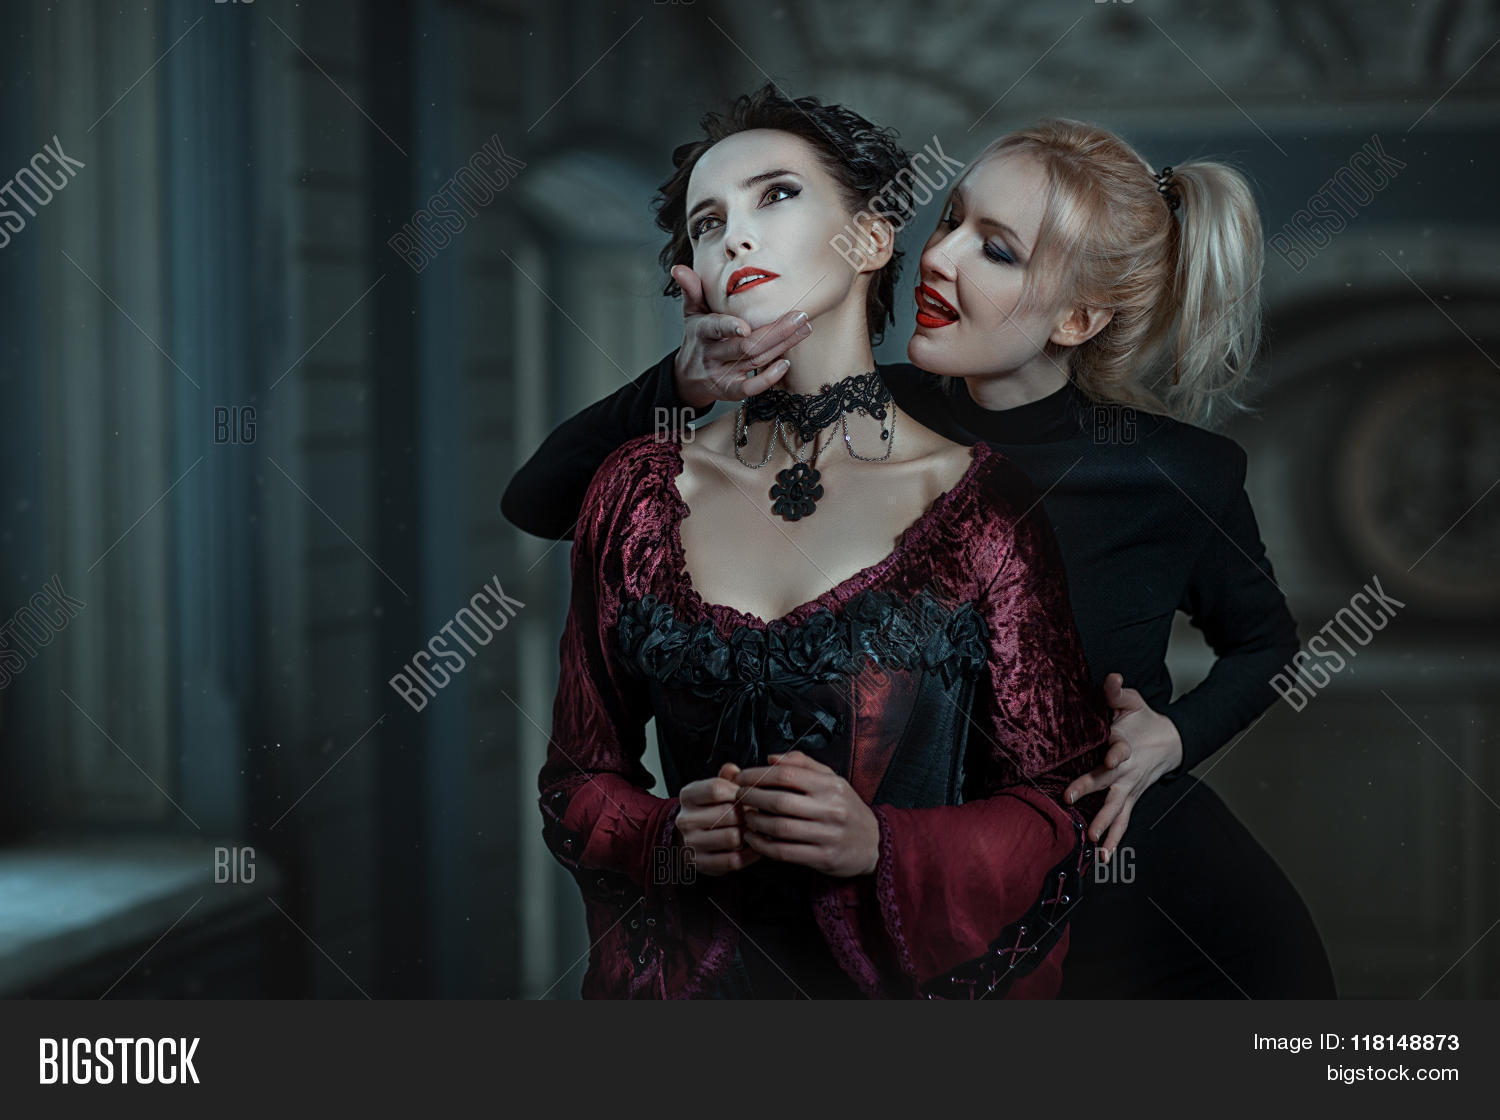 Best of Vampire woman bites girl